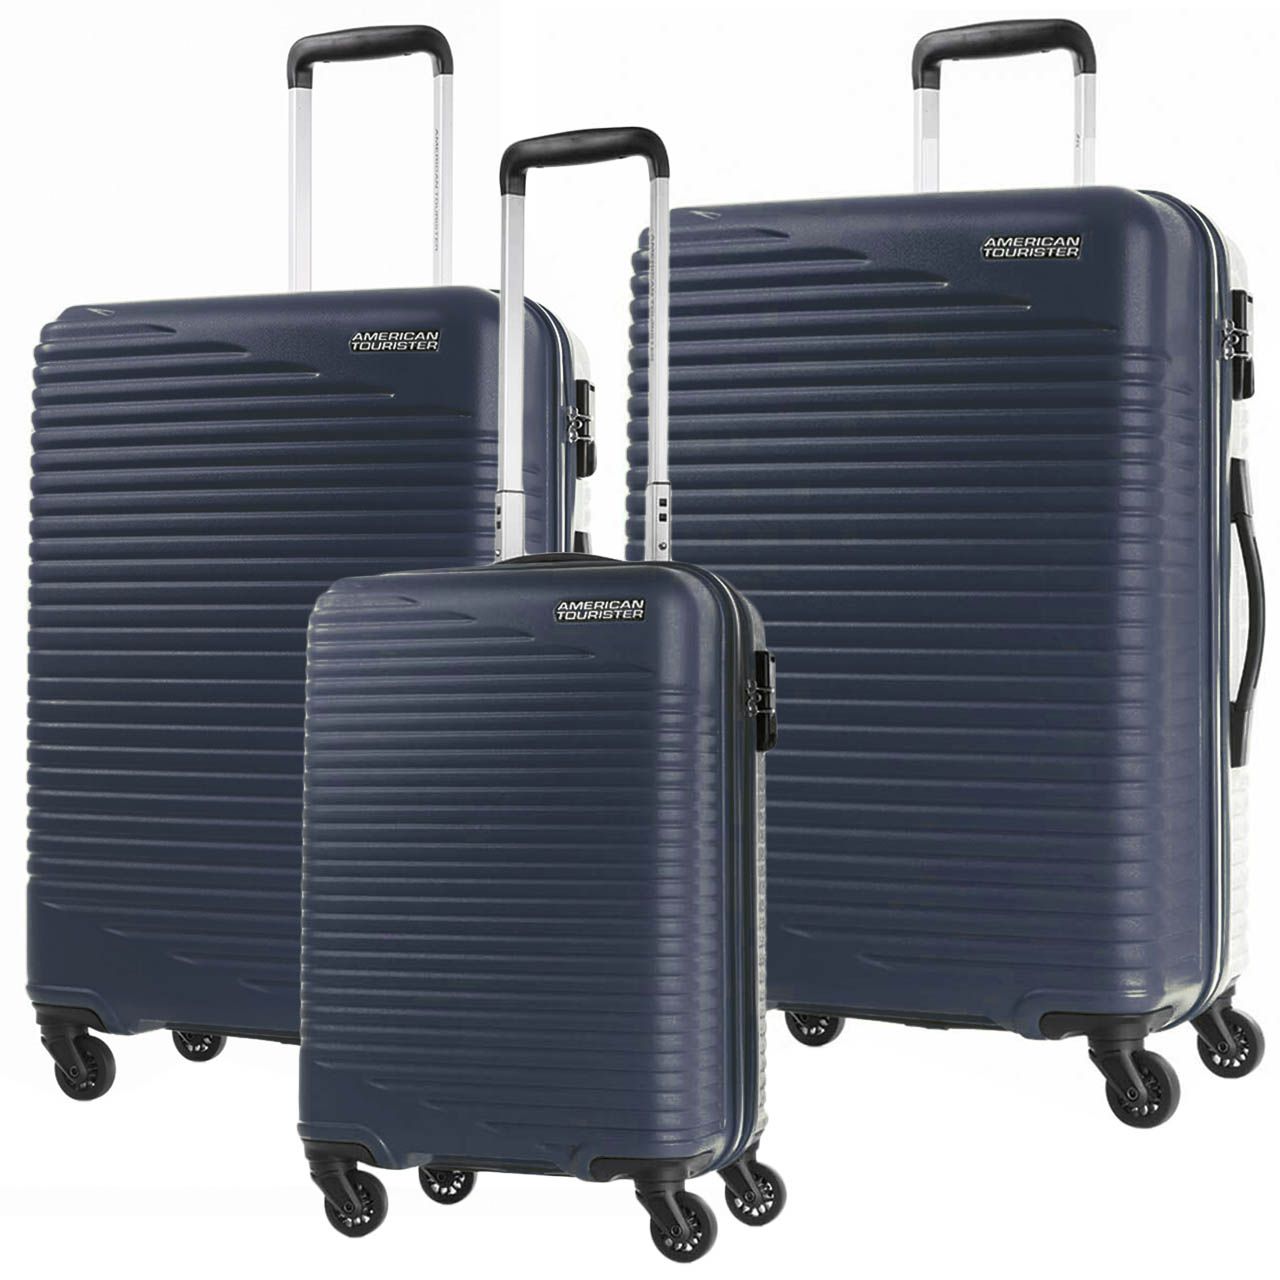 مجموعه سه عددی چمدان امریکن توریستر مدل SKYPARK HCO  -  - 2